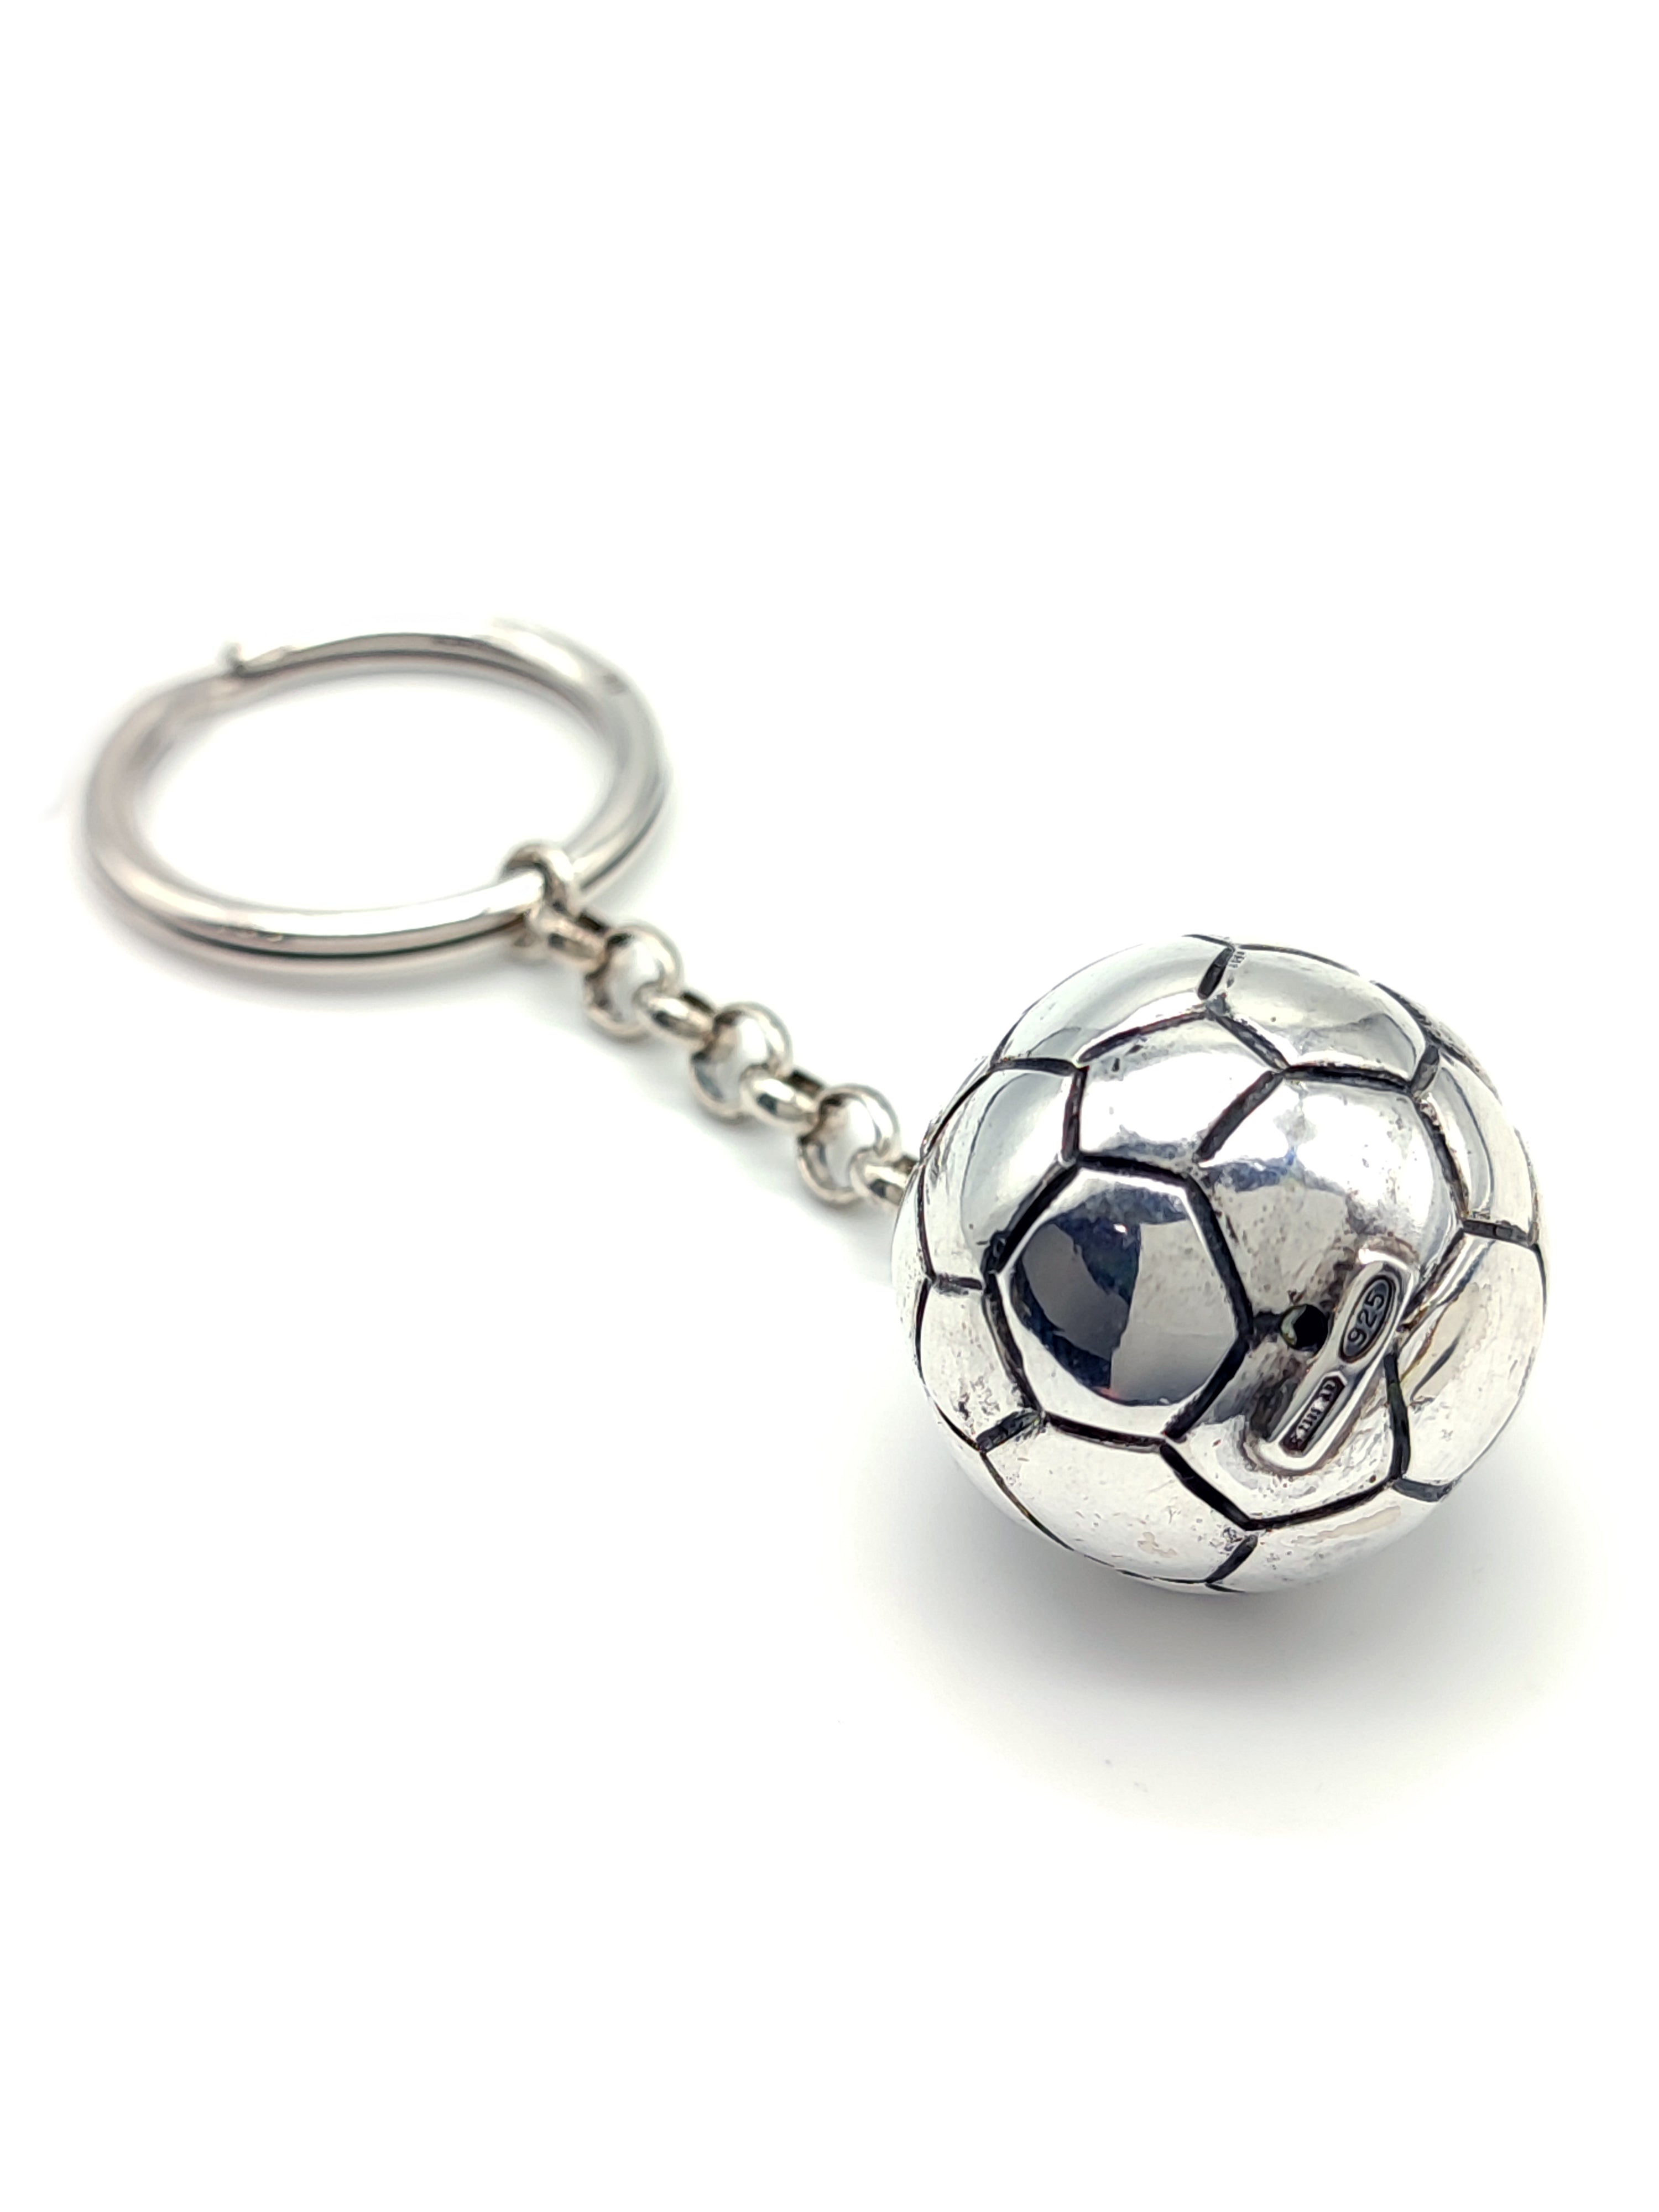 Pallone Calcio ciondolo in metallo pressofuso cromato anche con portachiavi